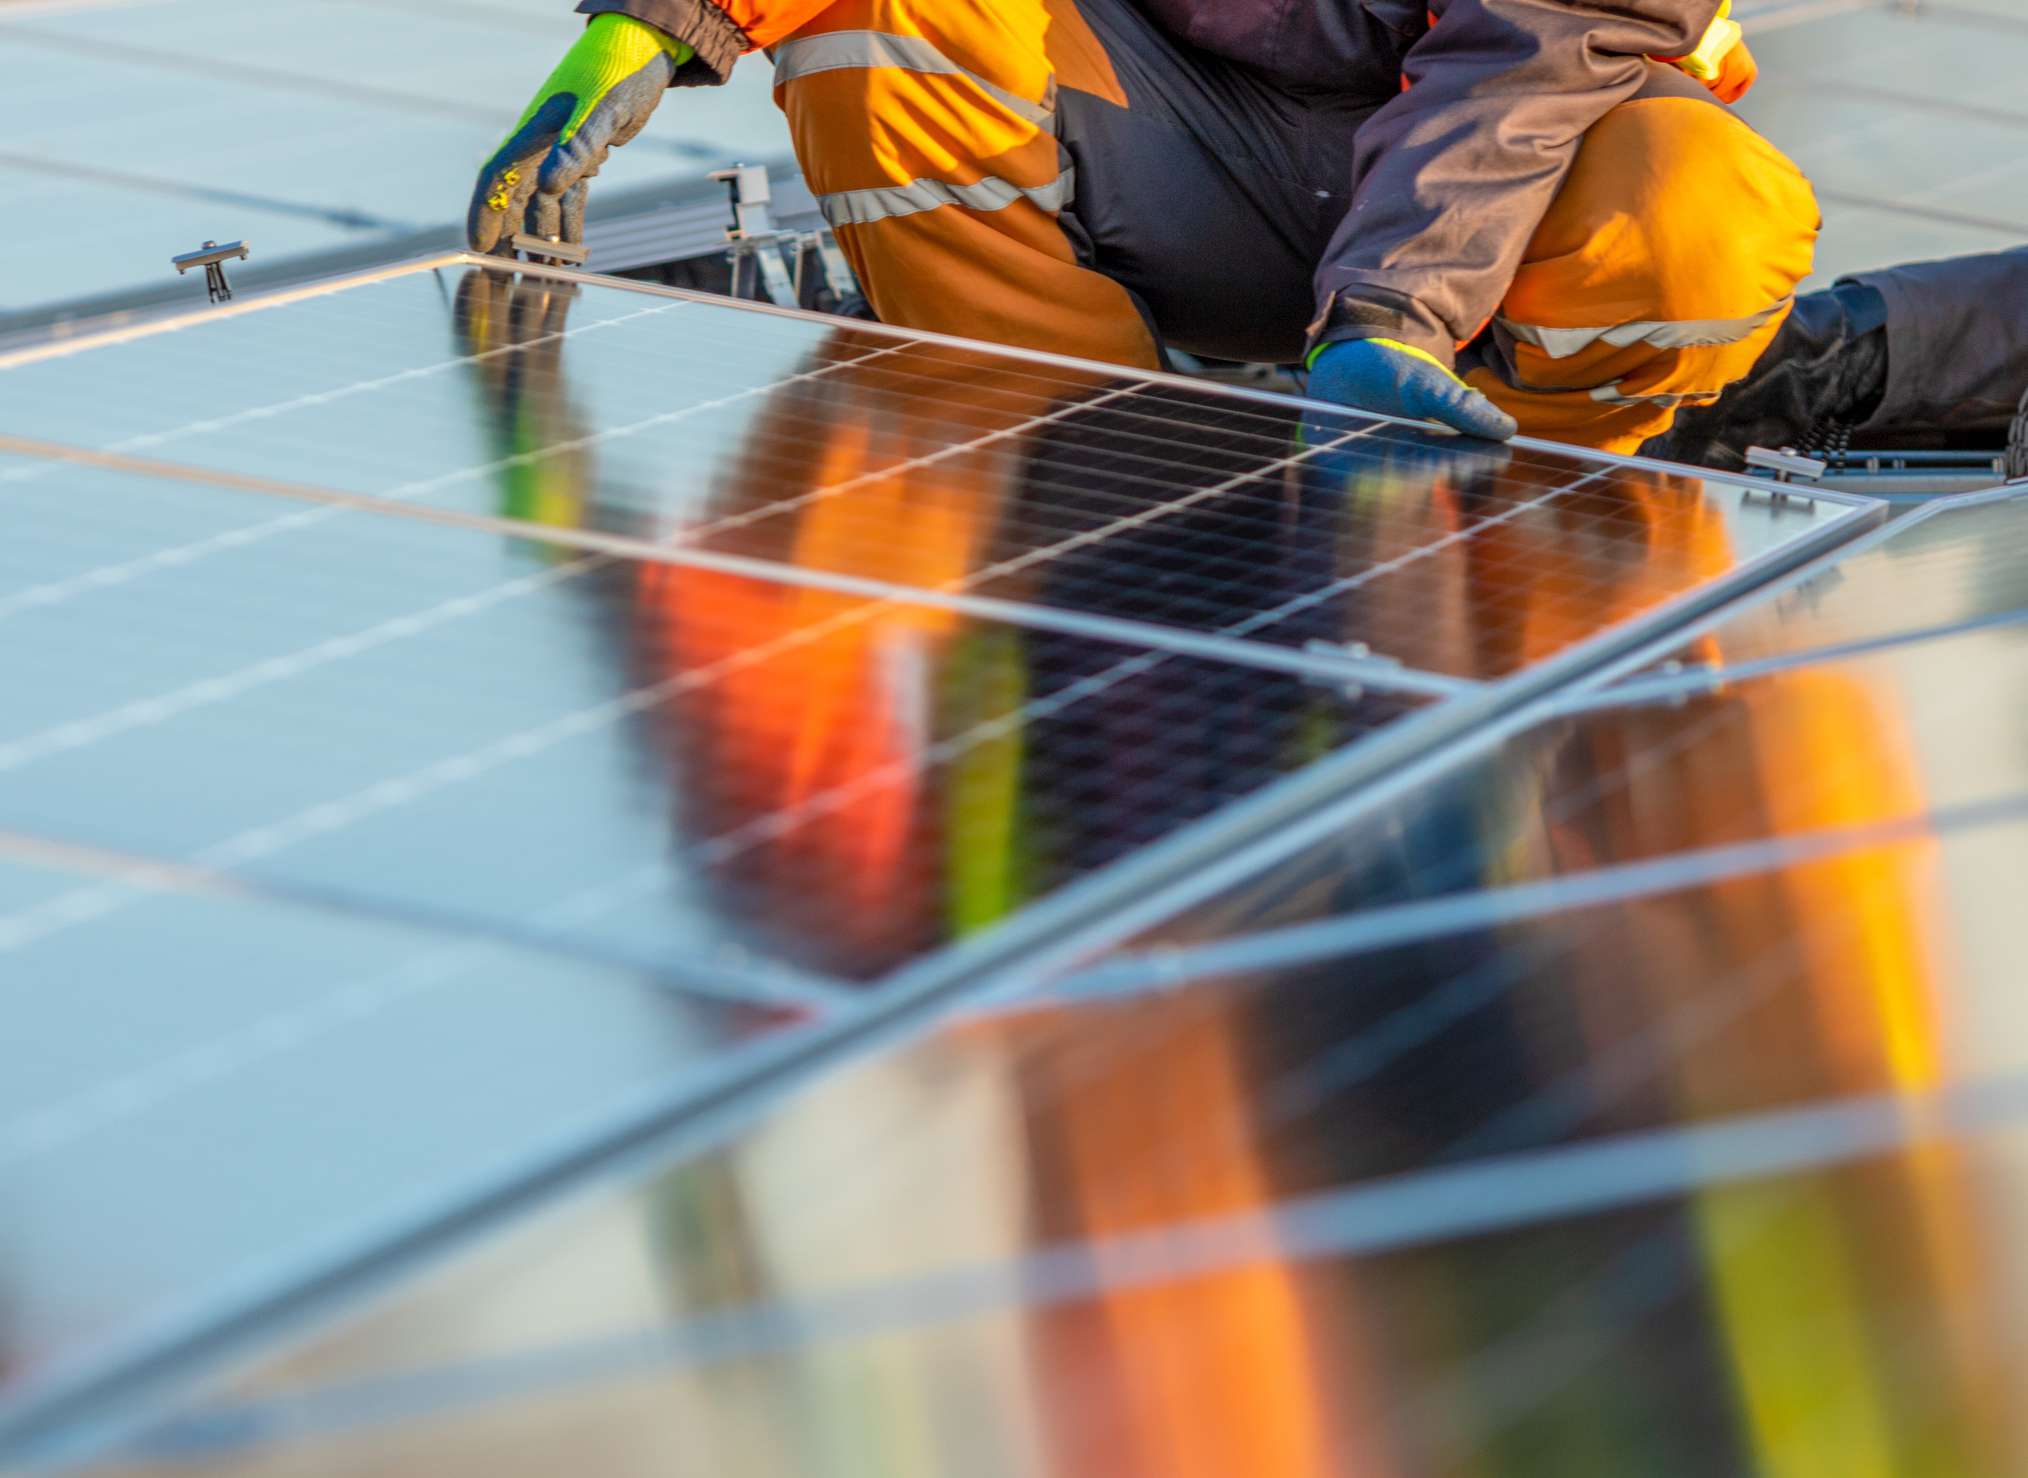 Una persona instalando paneles solares en un tejado